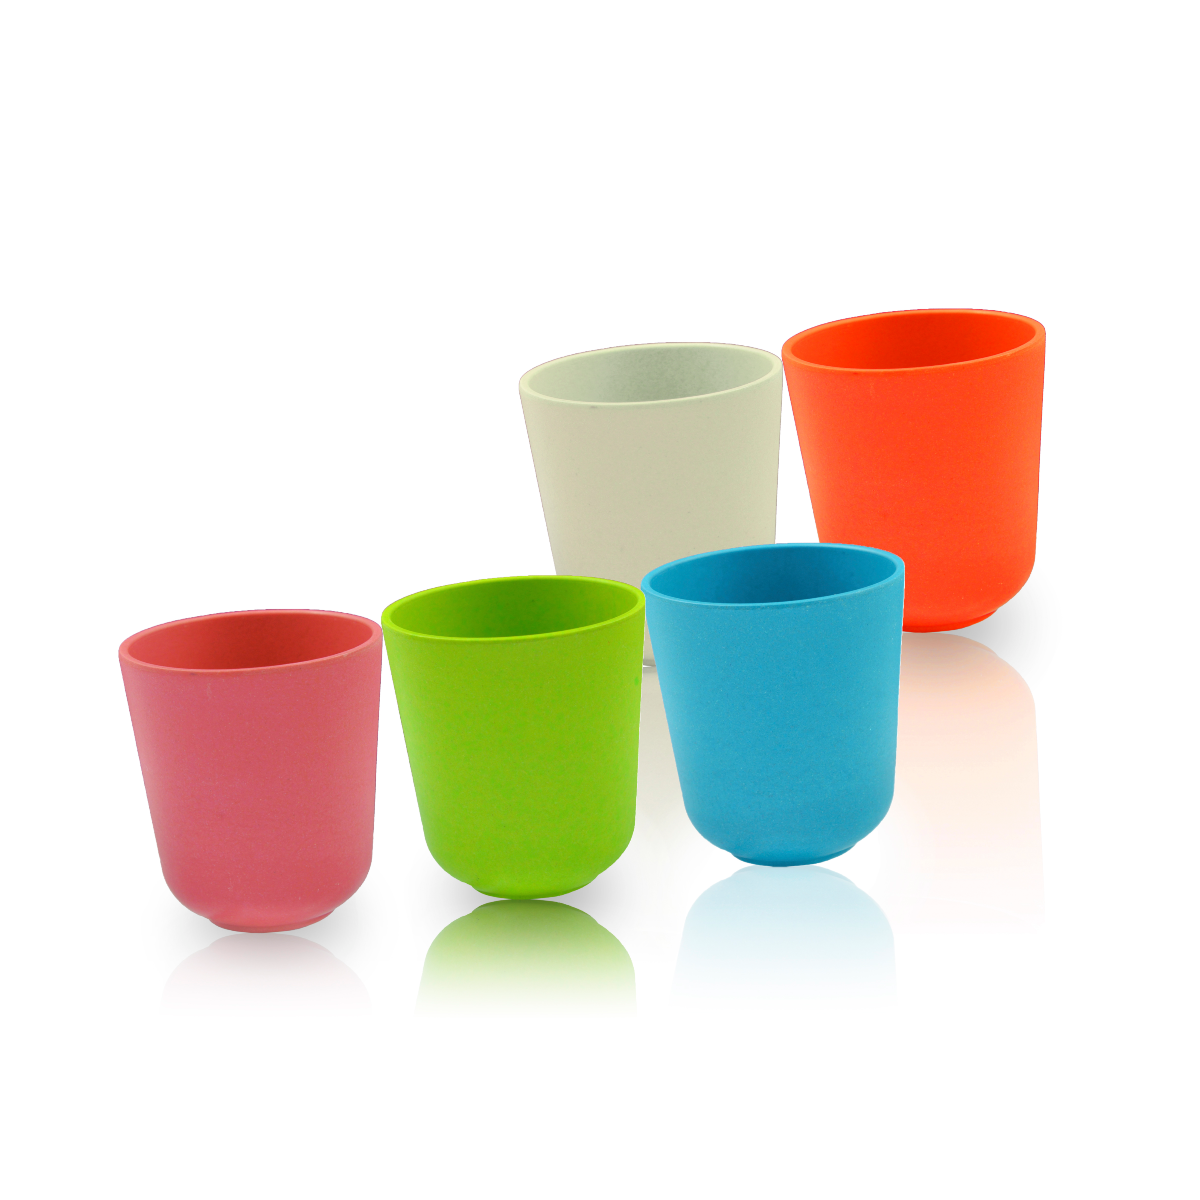 Cup Set (Multi-Color) - 5 pieces